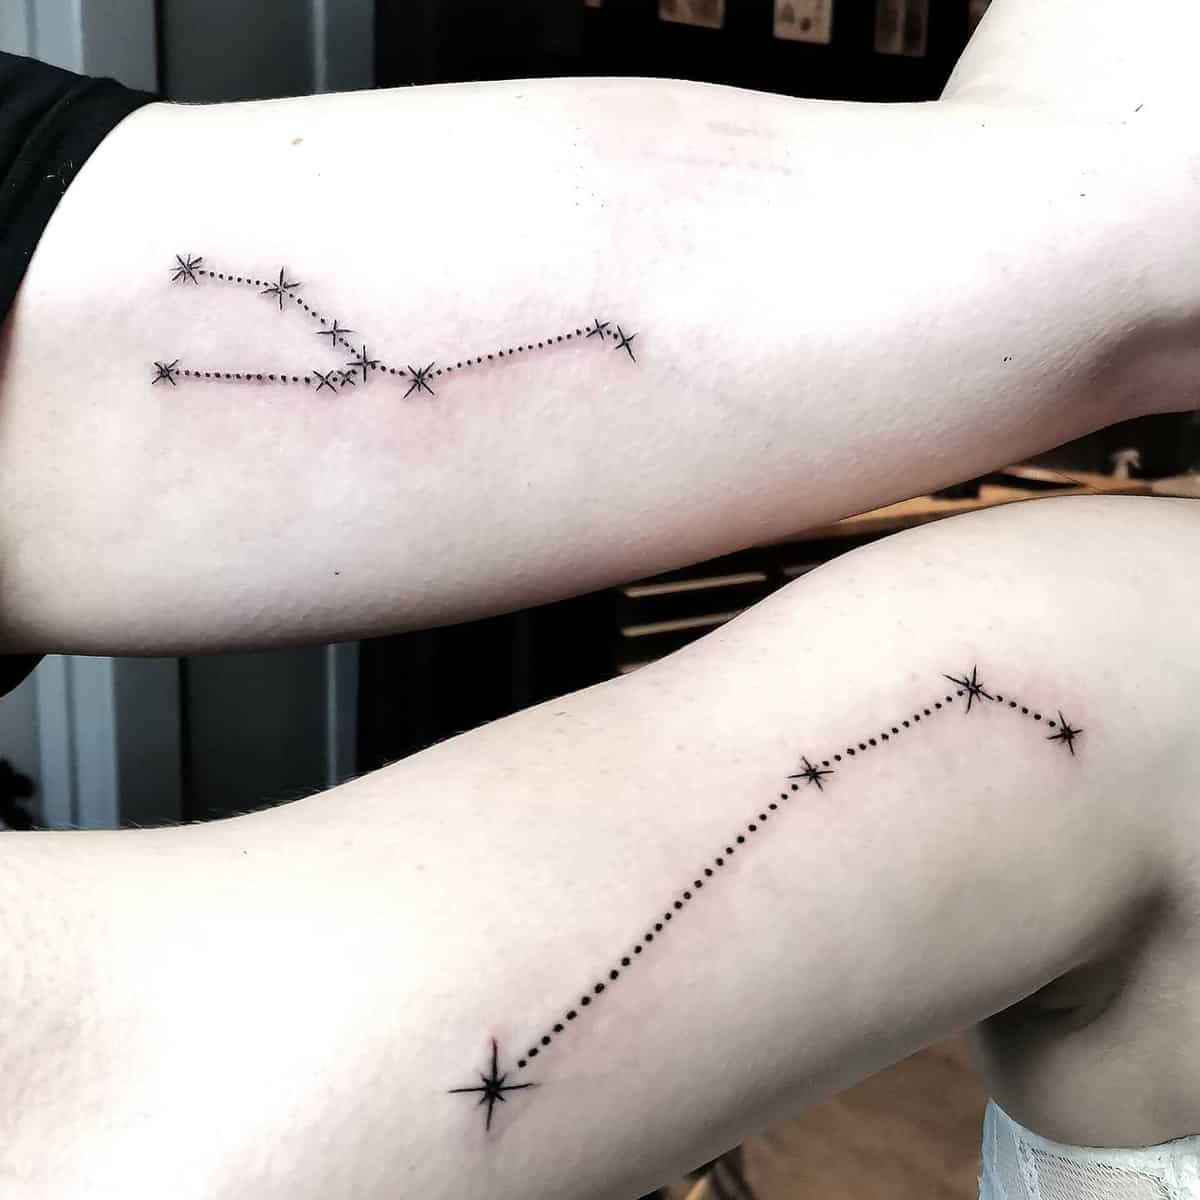 Bestfriend Matching Tattoos danna.tattoo